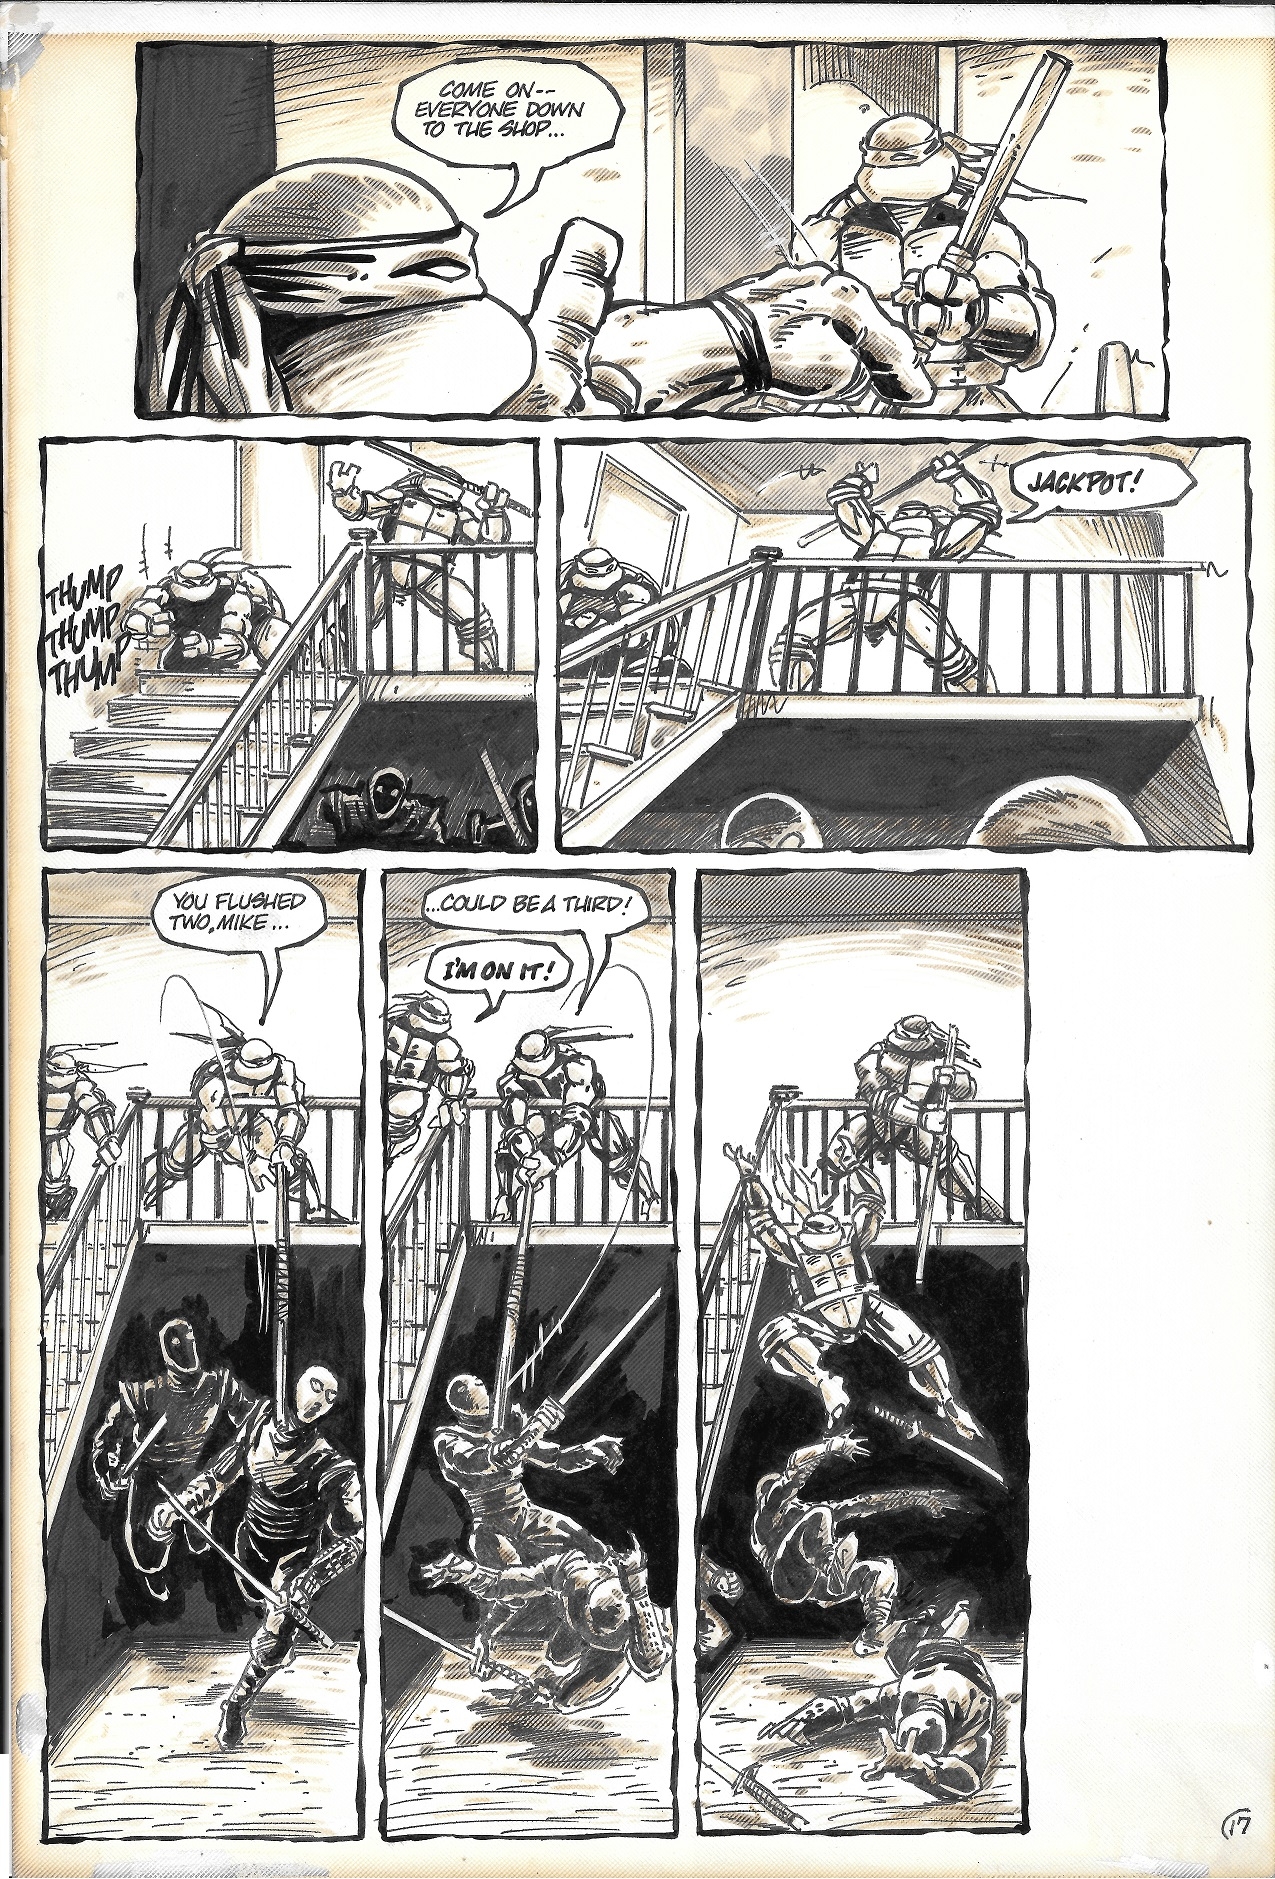 Teenage Mutant Ninja Turtles #10 pg 17 (TMNT) 1987 Comic Art